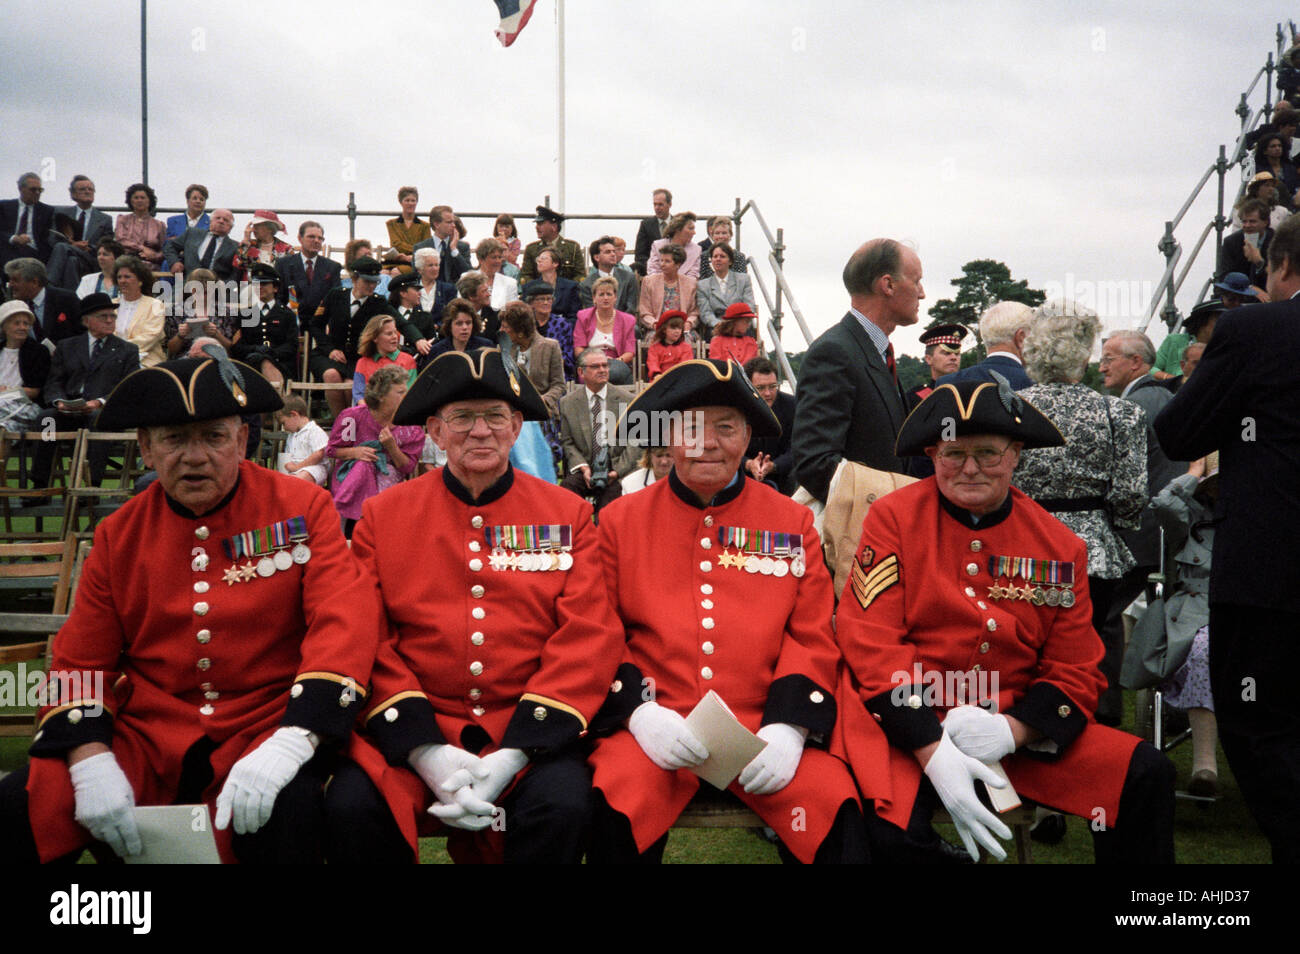 Quattro pensionati Chelsea in uniforme cerimoniale completa di fronte alla folla durante l'evento formale alla Royal Military Academy Sandhurst. Sandhurst, Regno Unito. Foto Stock